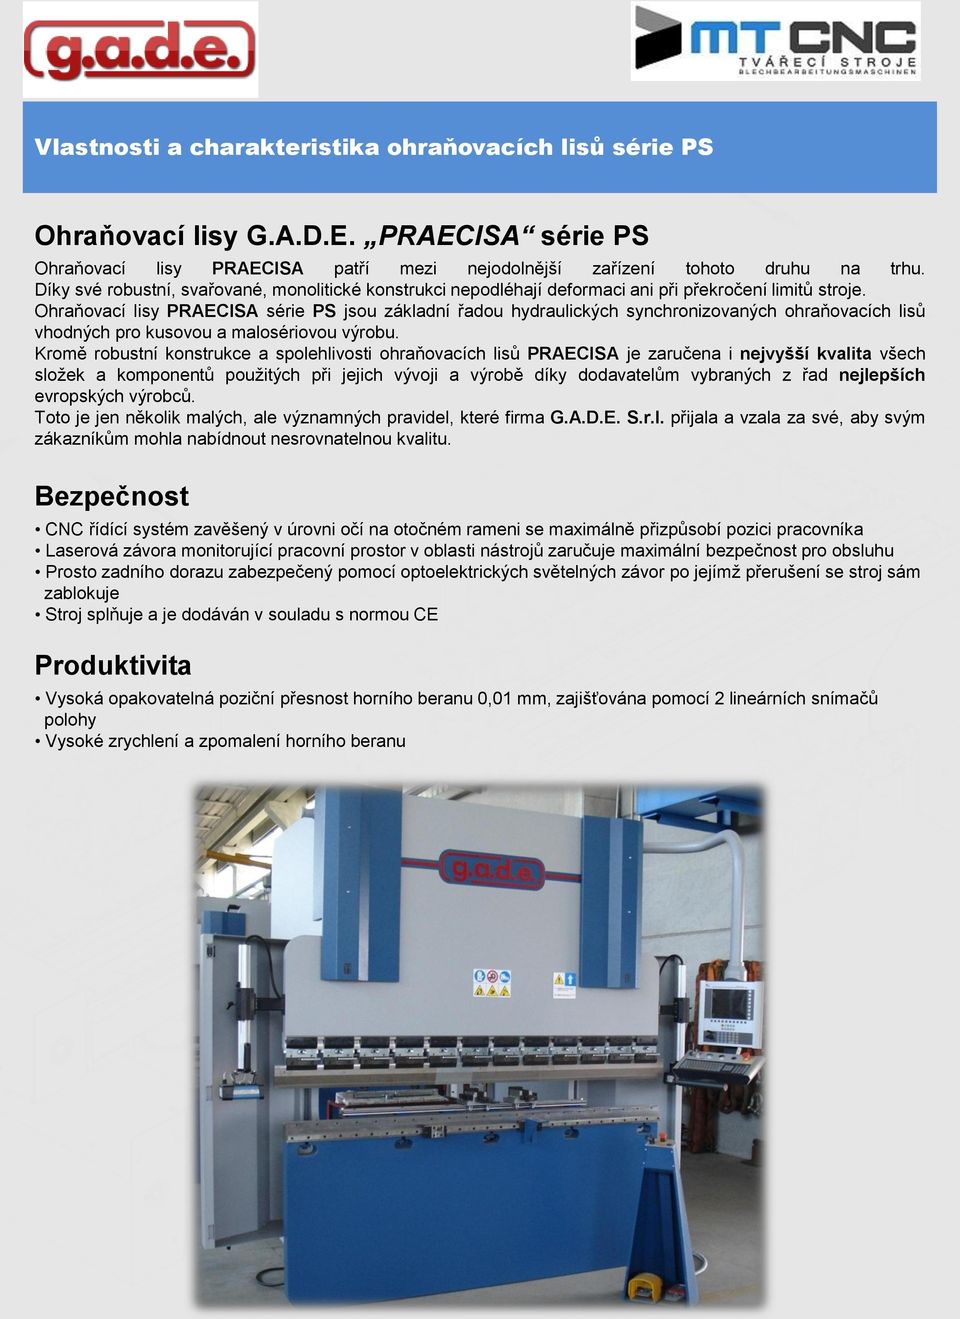 Ohraňovací lisy PRAECISA série PS jsou základní řadou hydraulických synchronizovaných ohraňovacích lisů vhodných pro kusovou a malosériovou výrobu.